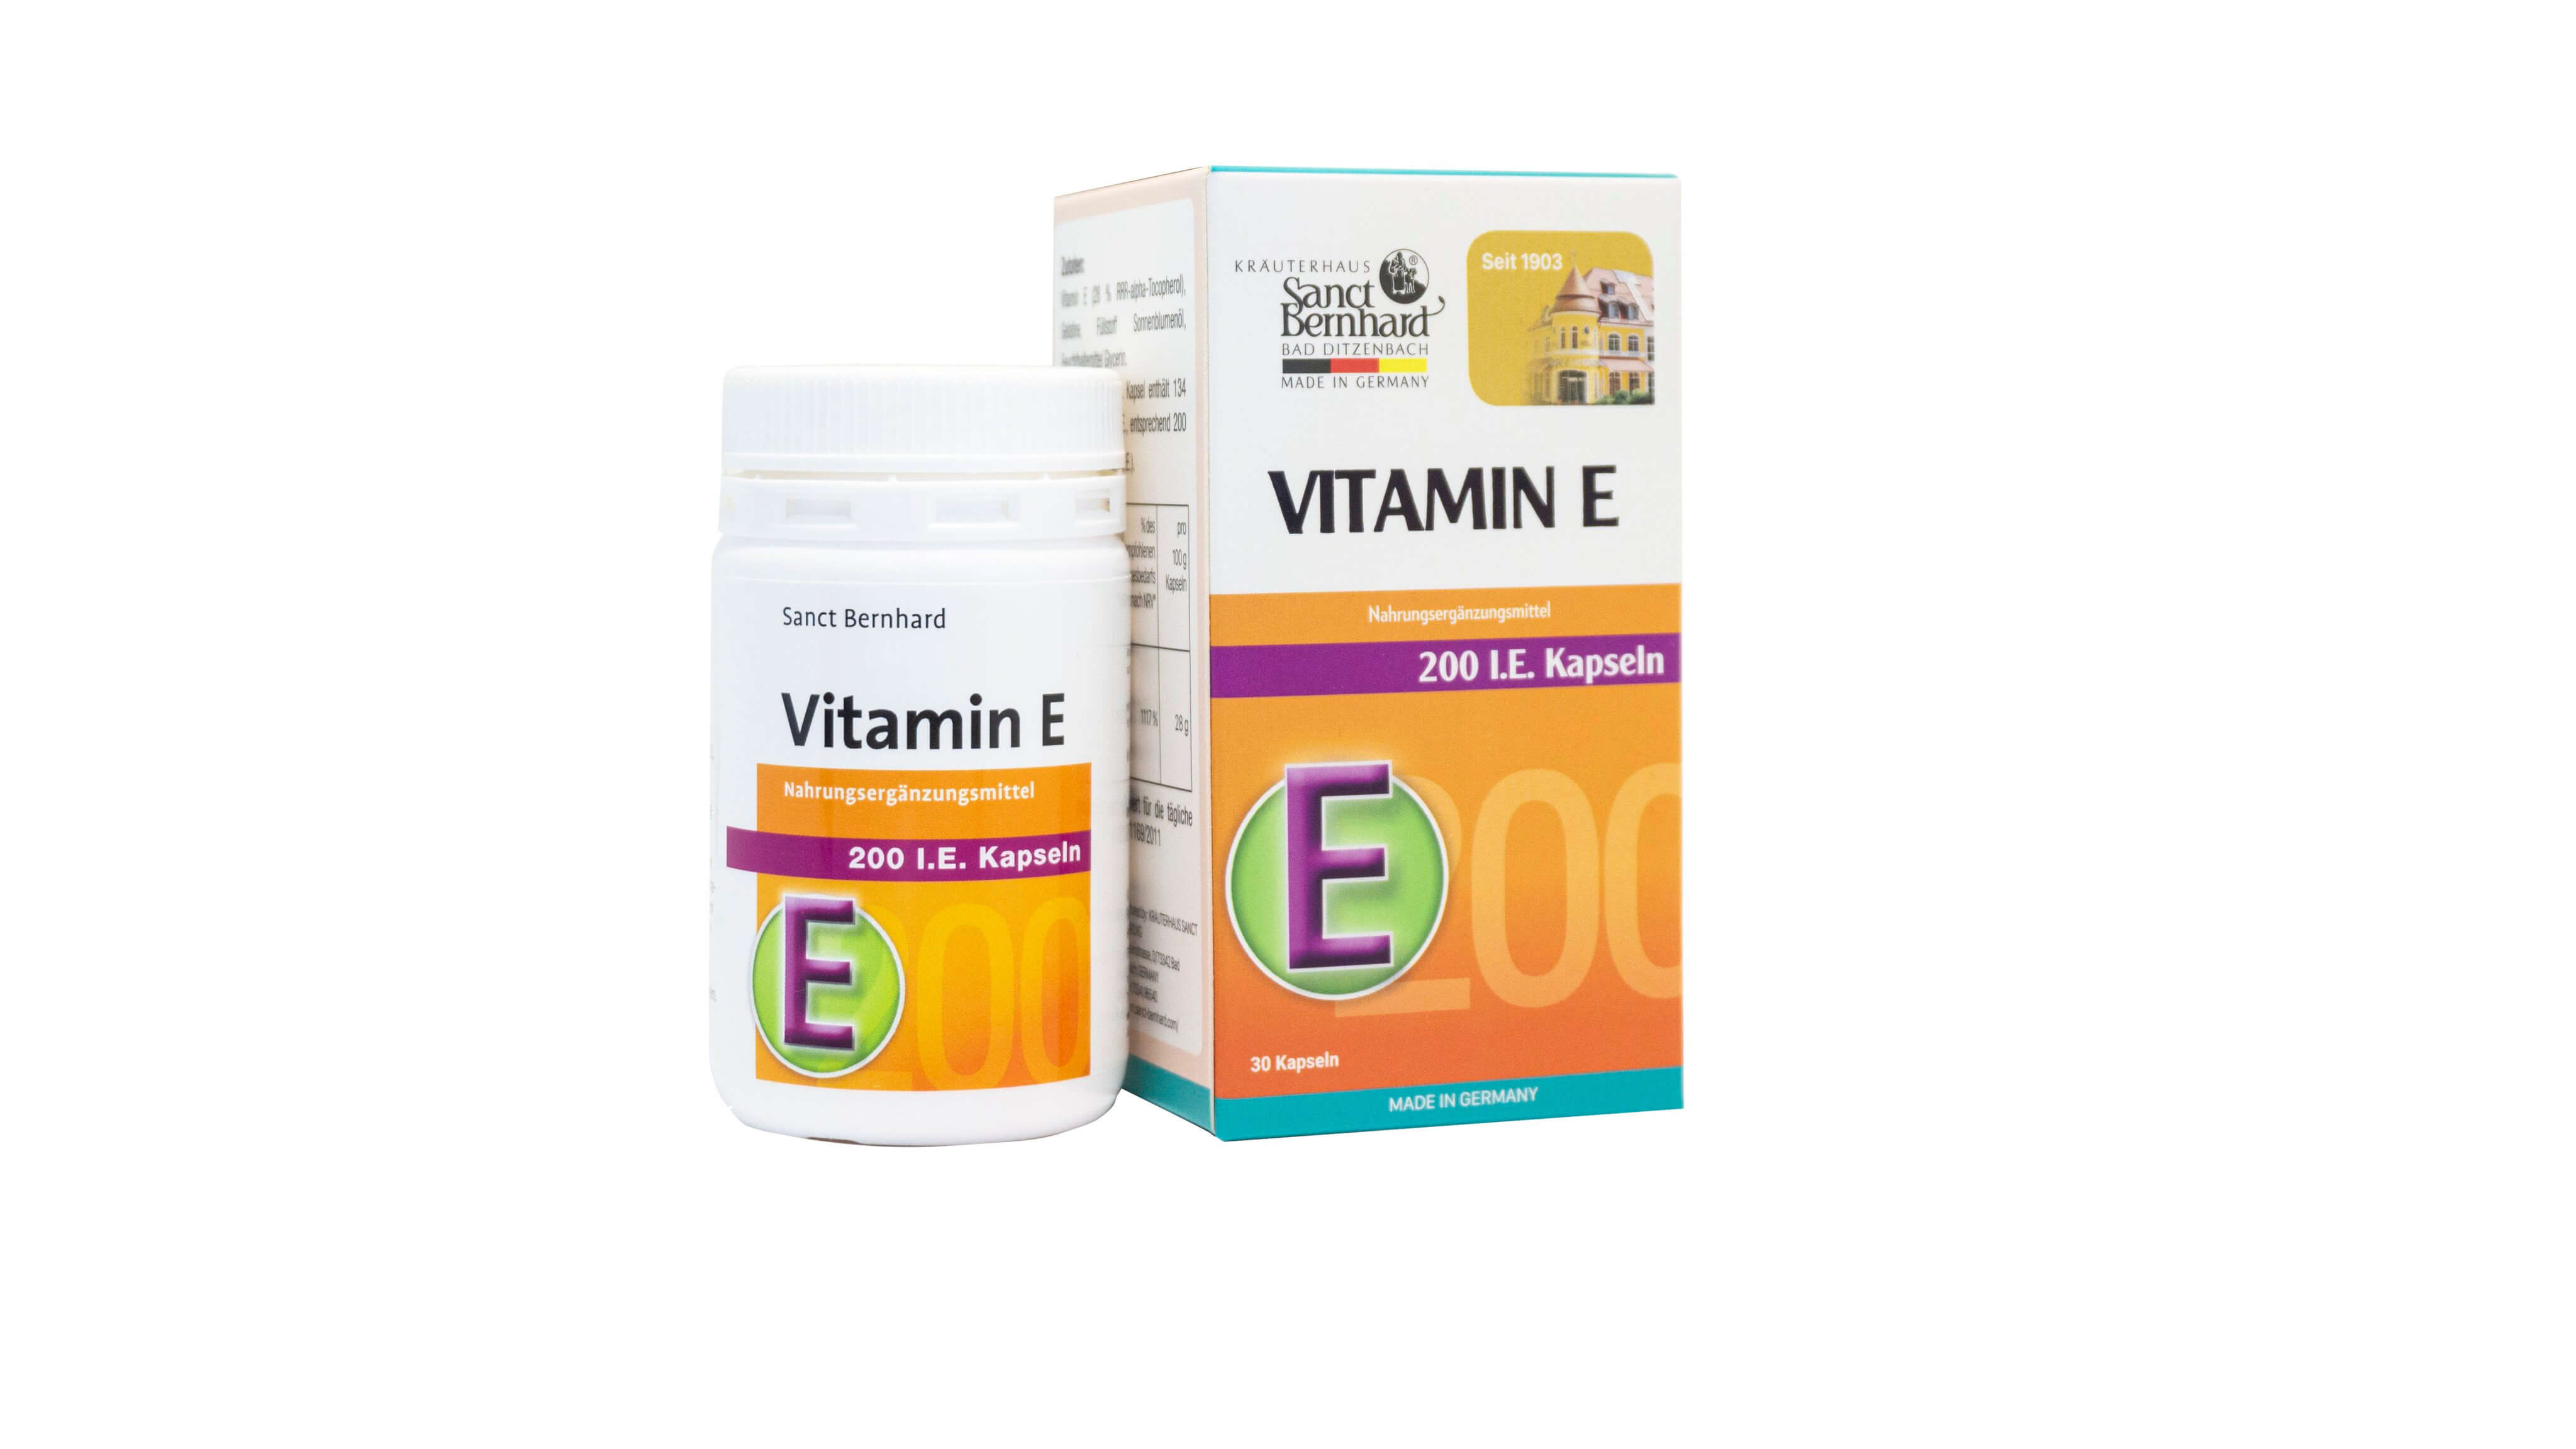 Công Ty TNHH Dược Phẩm Thanh Trang Ra Mắt Sản Phẩm Mới: Viên nang ngăn ngừa lão hóa Vitamin E 200 IE Kapseln